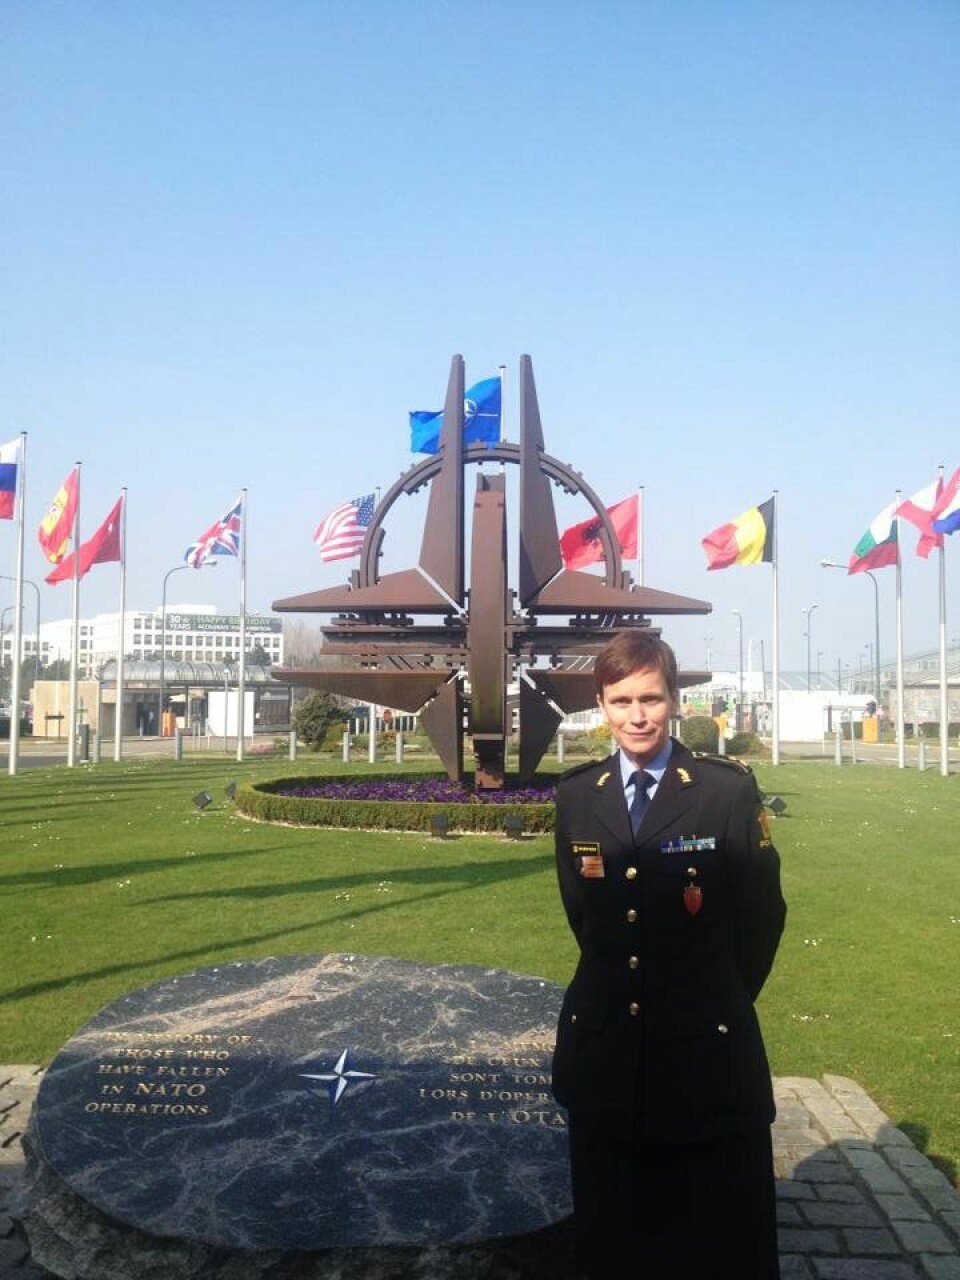 INTERNASJONAL: Ann-Kristin Kvilekval har erfaring fra en rekke land og oppdrag. Her er hun foran NATOs hovedkvarter i Brussel.